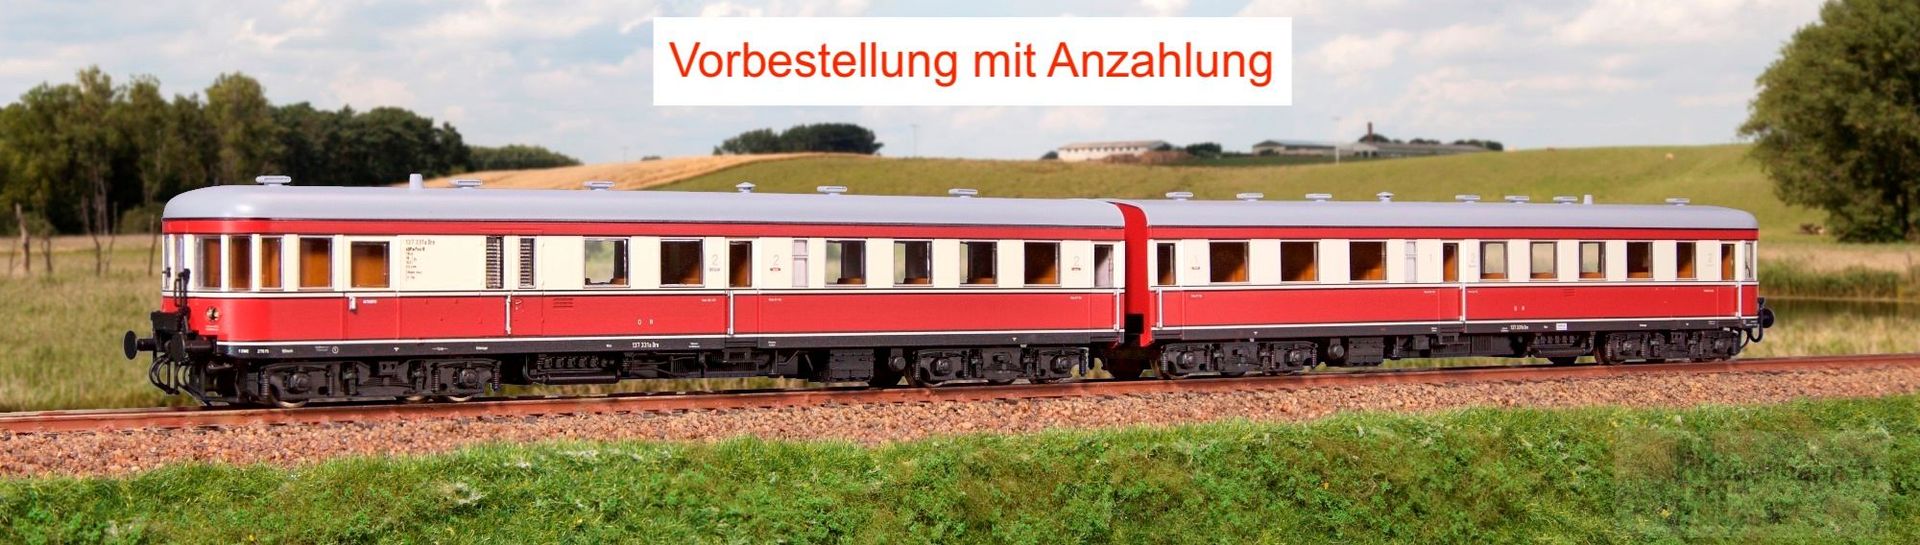 Kres 51001300 - Triebzug VT 134 Stettin DR Ep.III TT 1:120